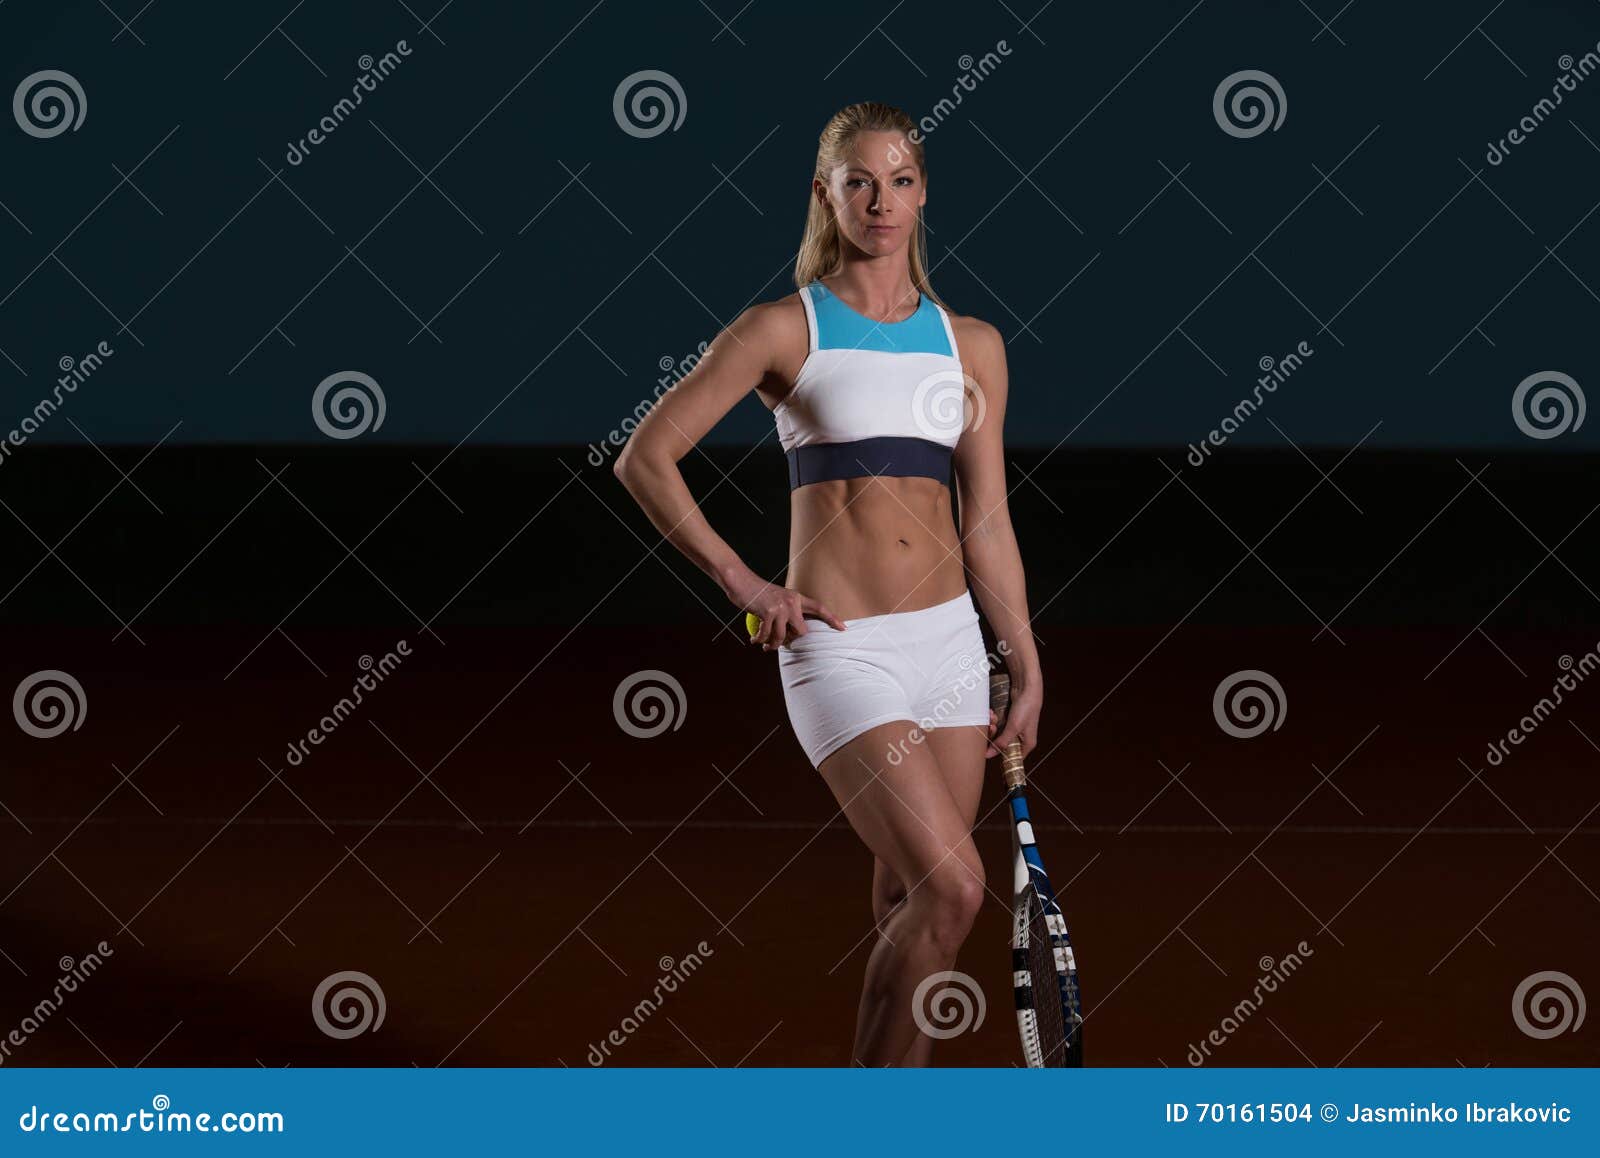 woman in sportswear serves tennis ball